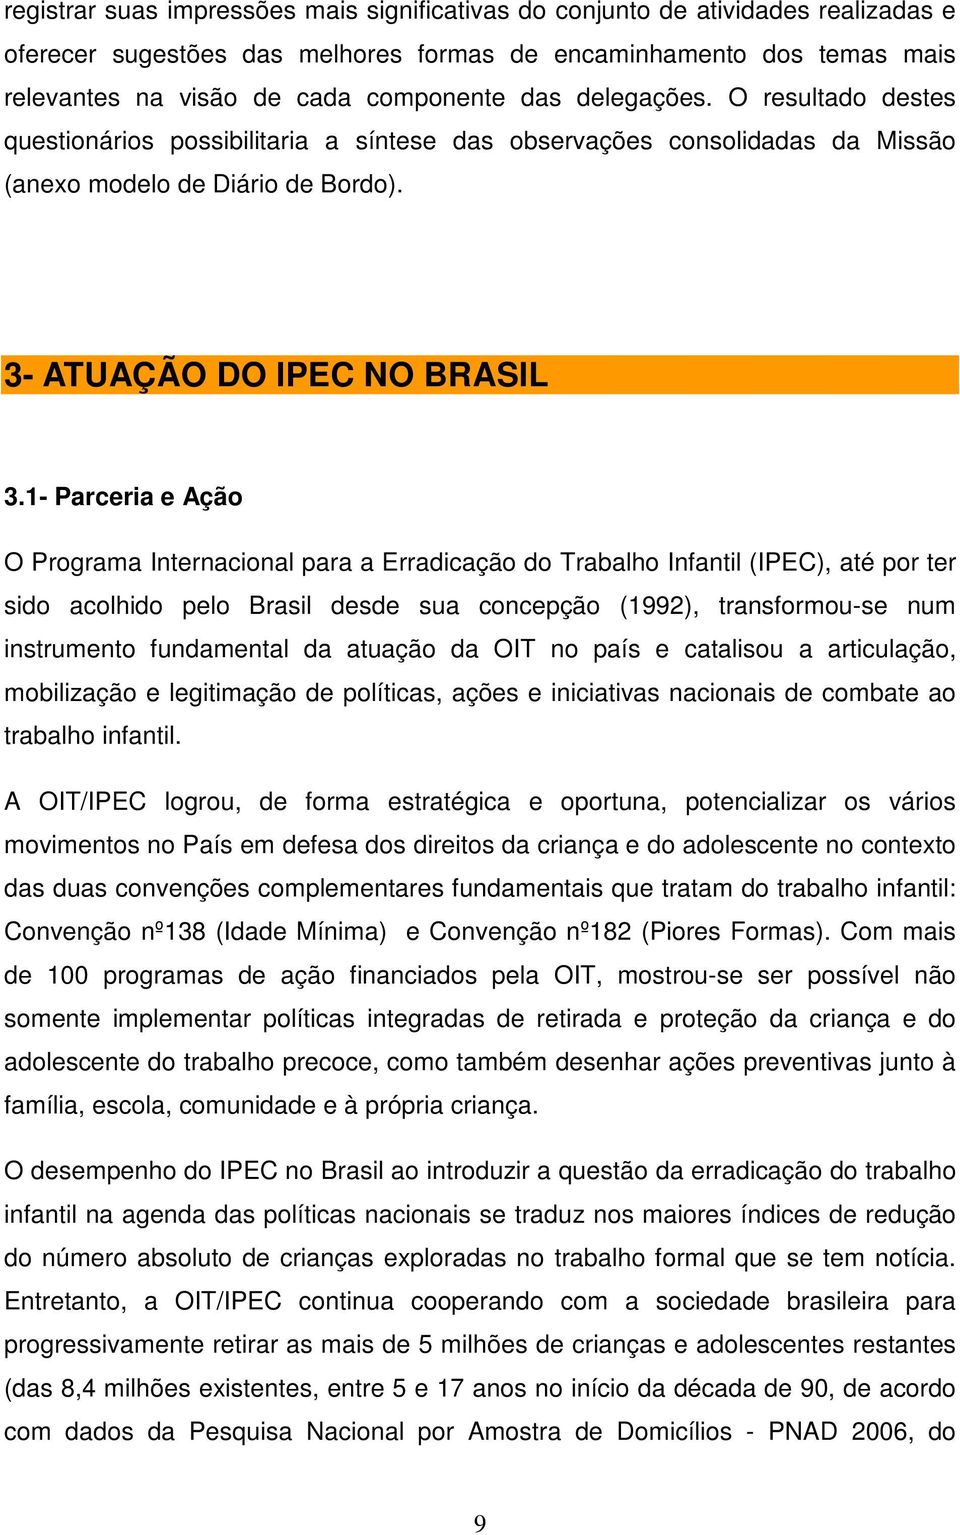 1- Parceria e Ação O Programa Internacional para a Erradicação do Trabalho Infantil (IPEC), até por ter sido acolhido pelo Brasil desde sua concepção (1992), transformou-se num instrumento